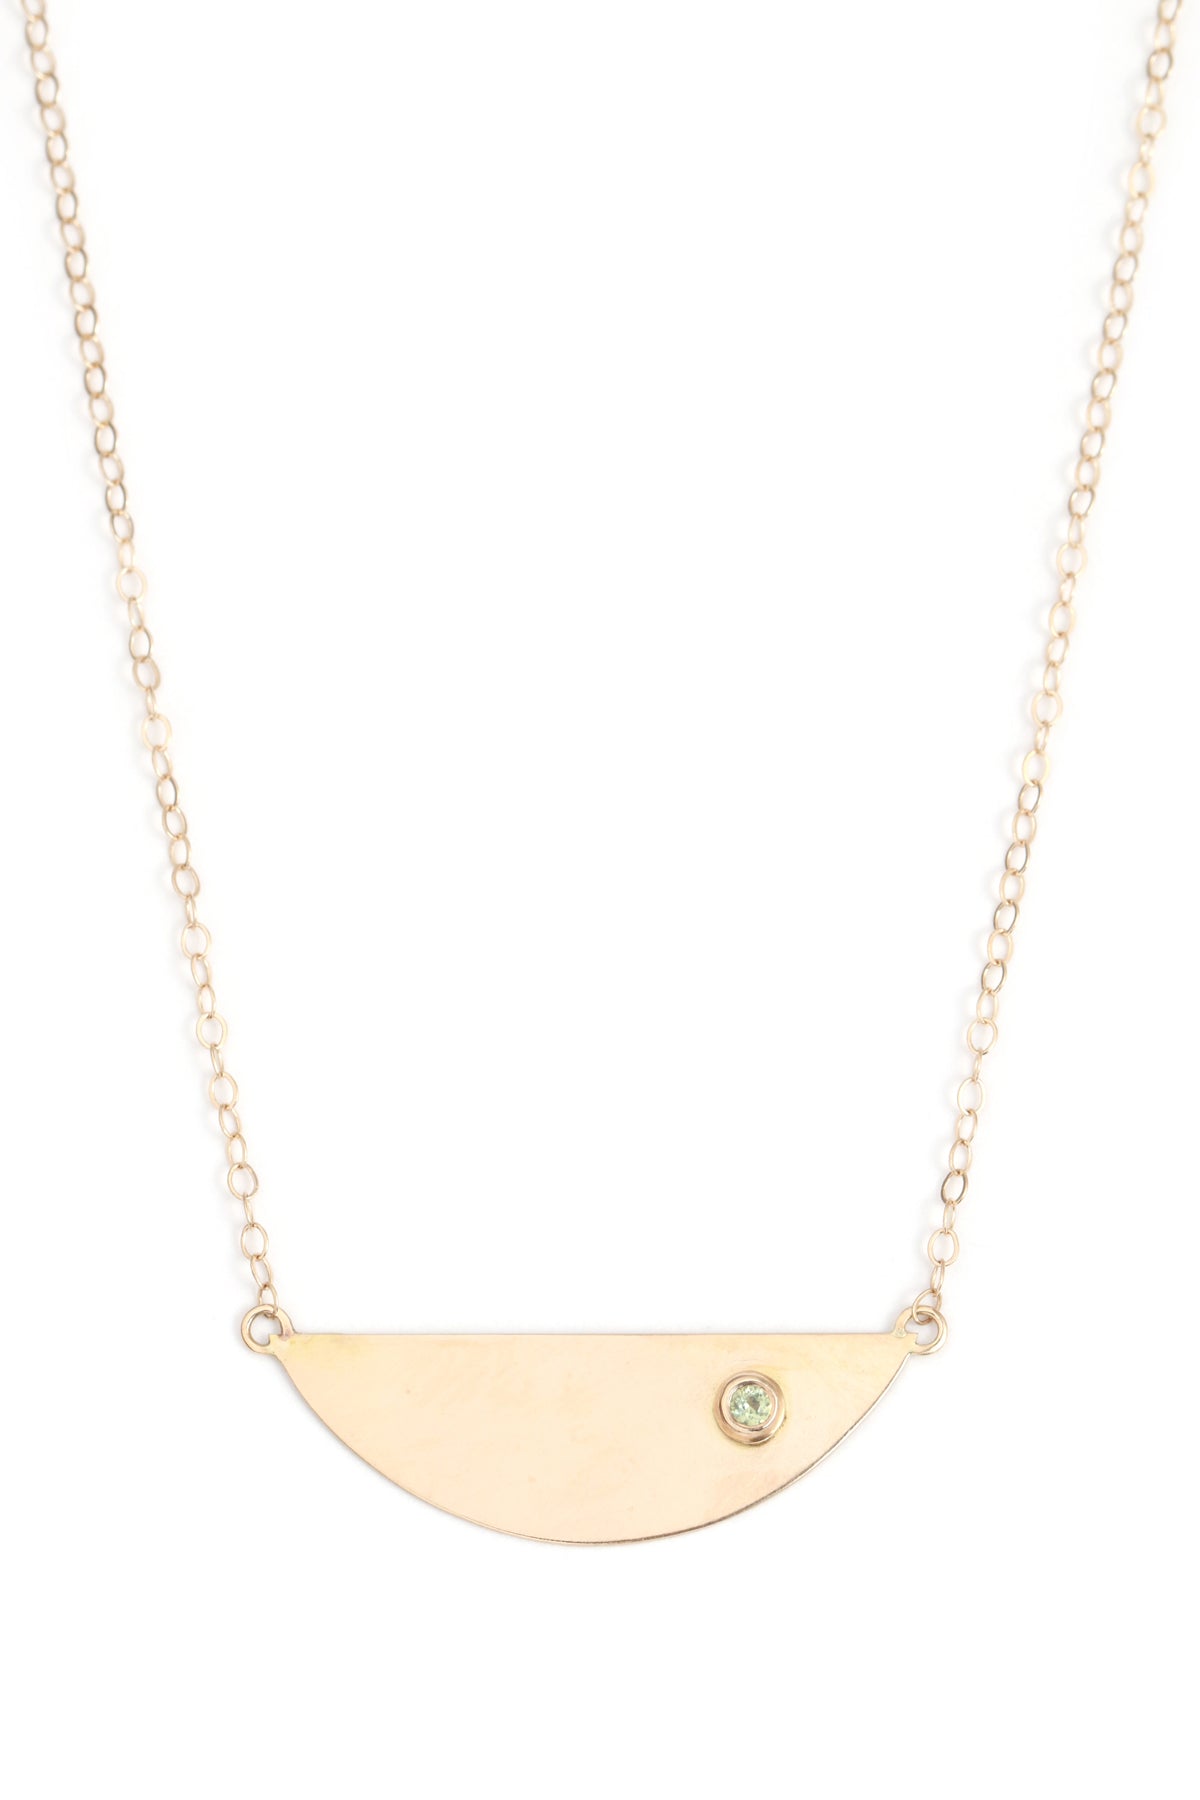 Small Rock Necklace – Melissa O'Brien Designs